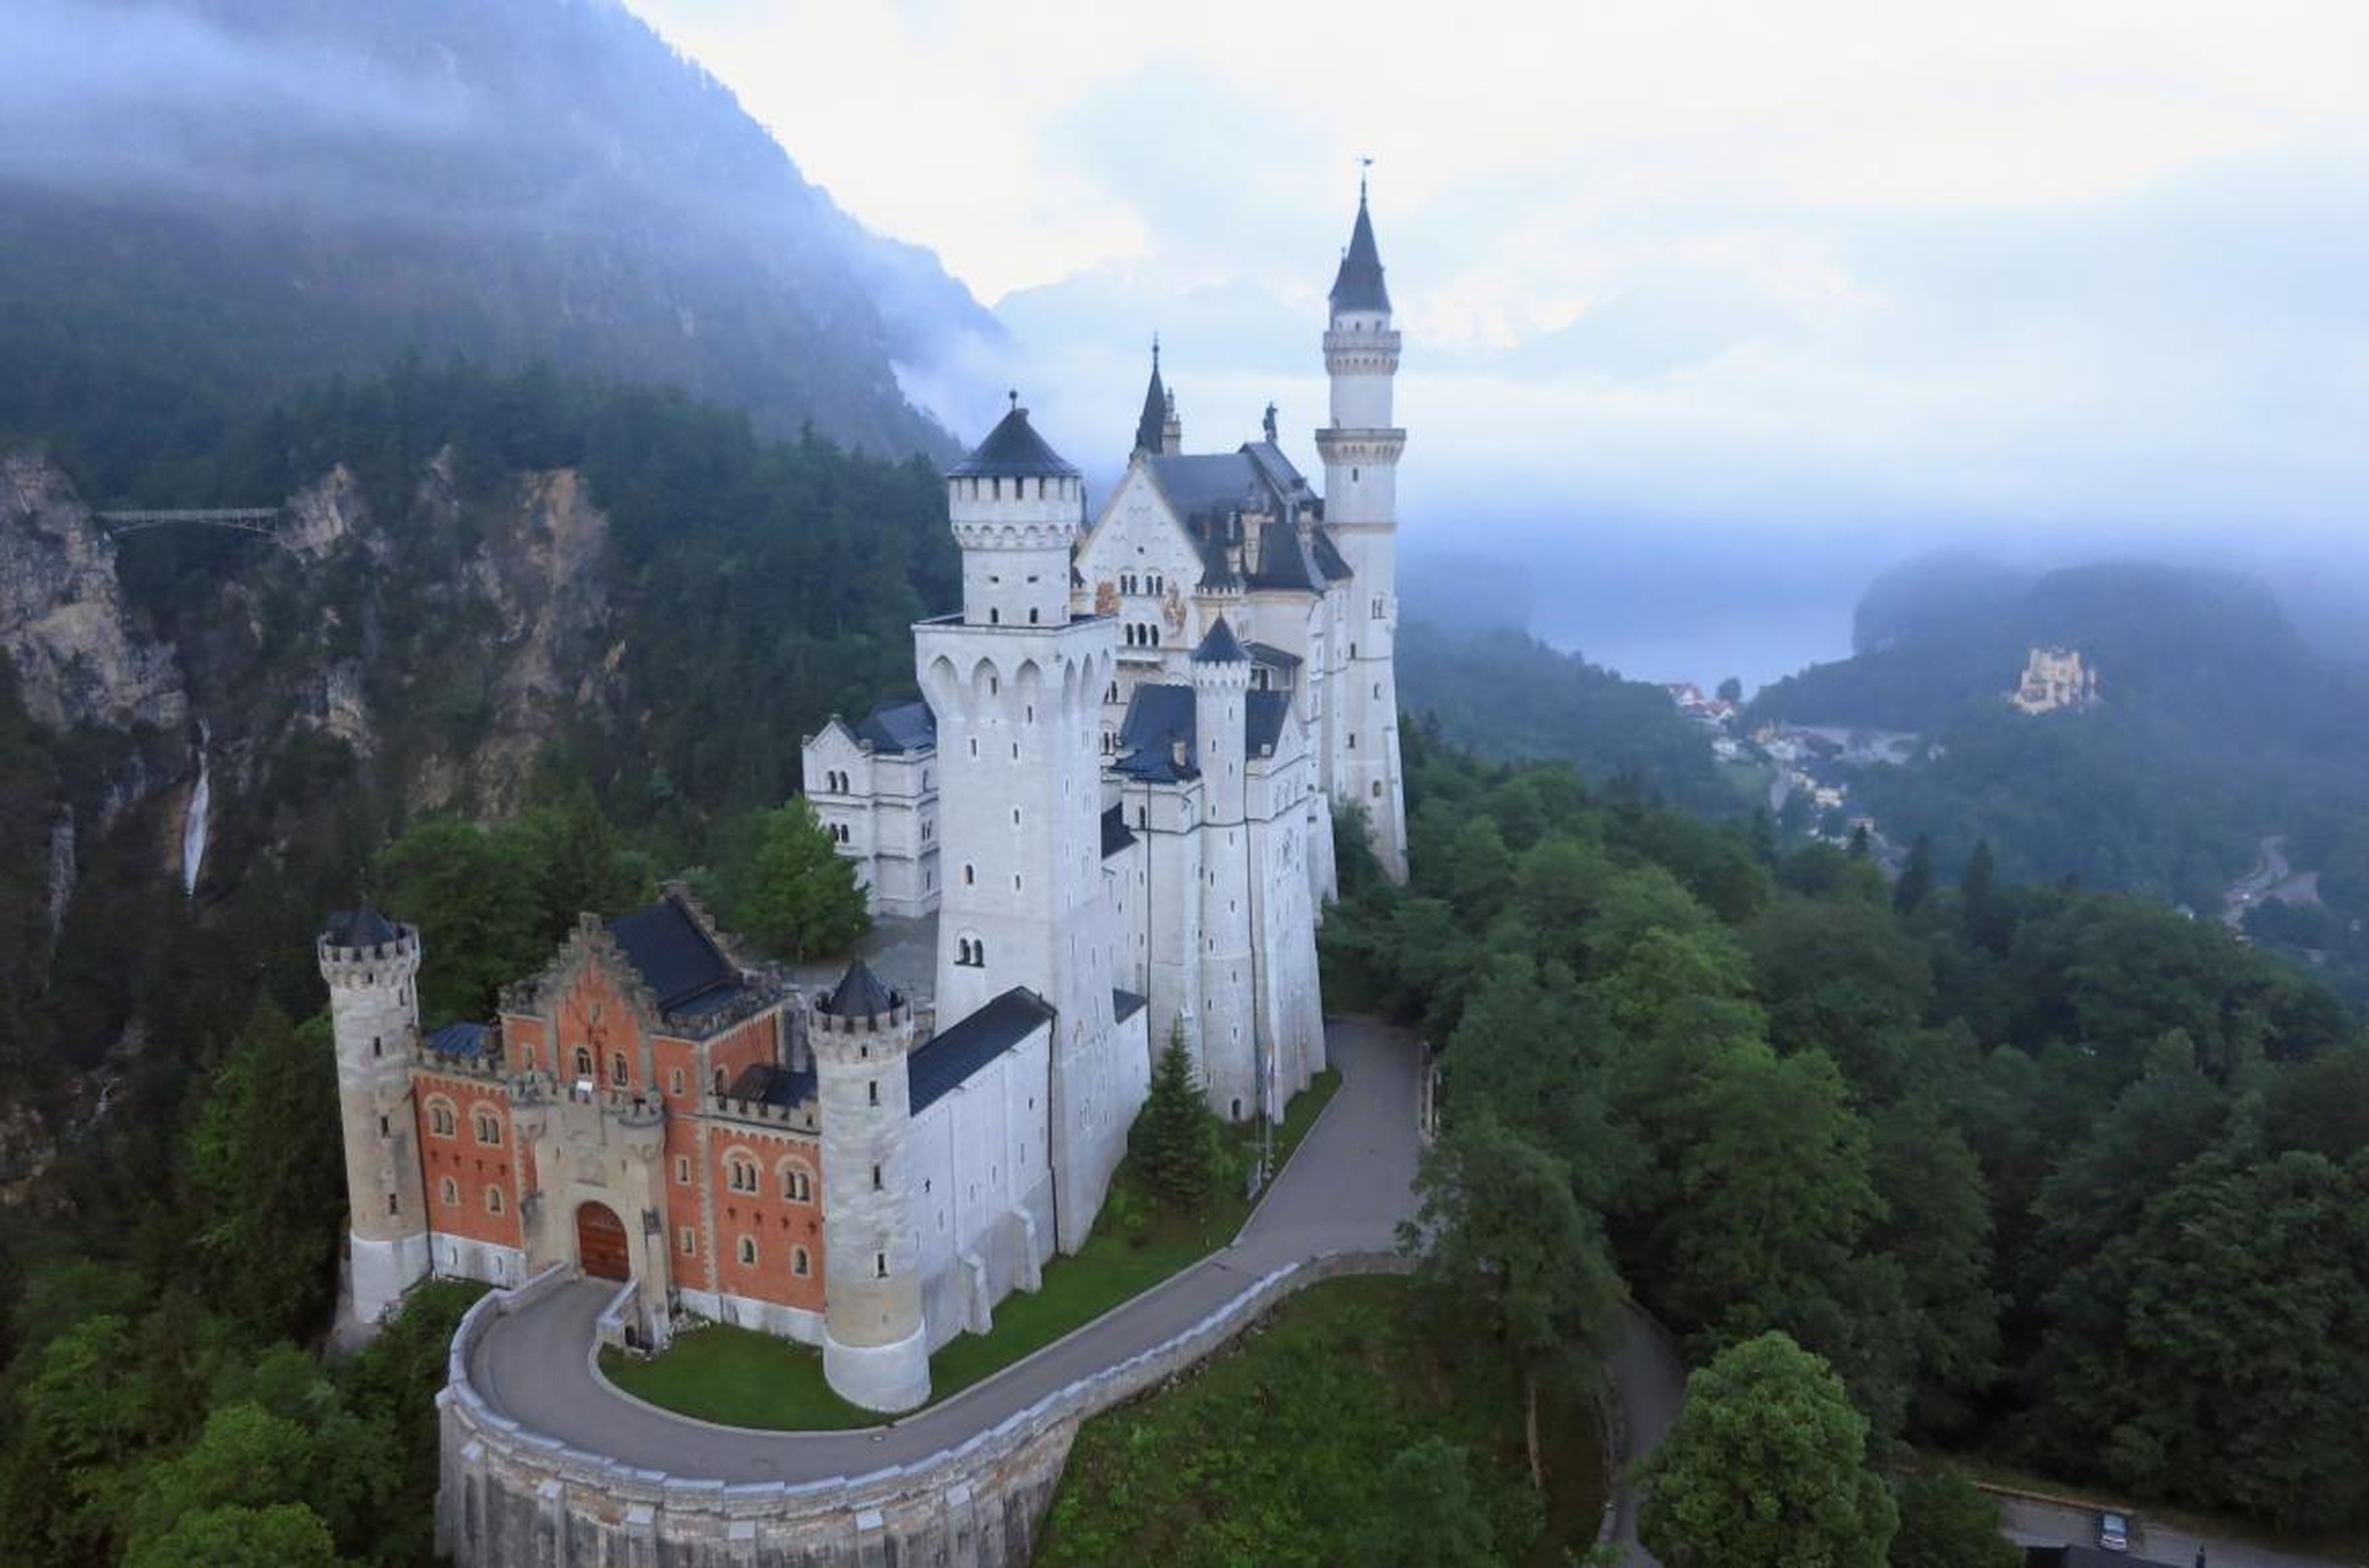 El castillo de Neuschwanstein, en el estado alemán de Baviera, inspiró a Walt Disney a crear el castillo de la Bella Durmiente. Es fácil saber por qué.